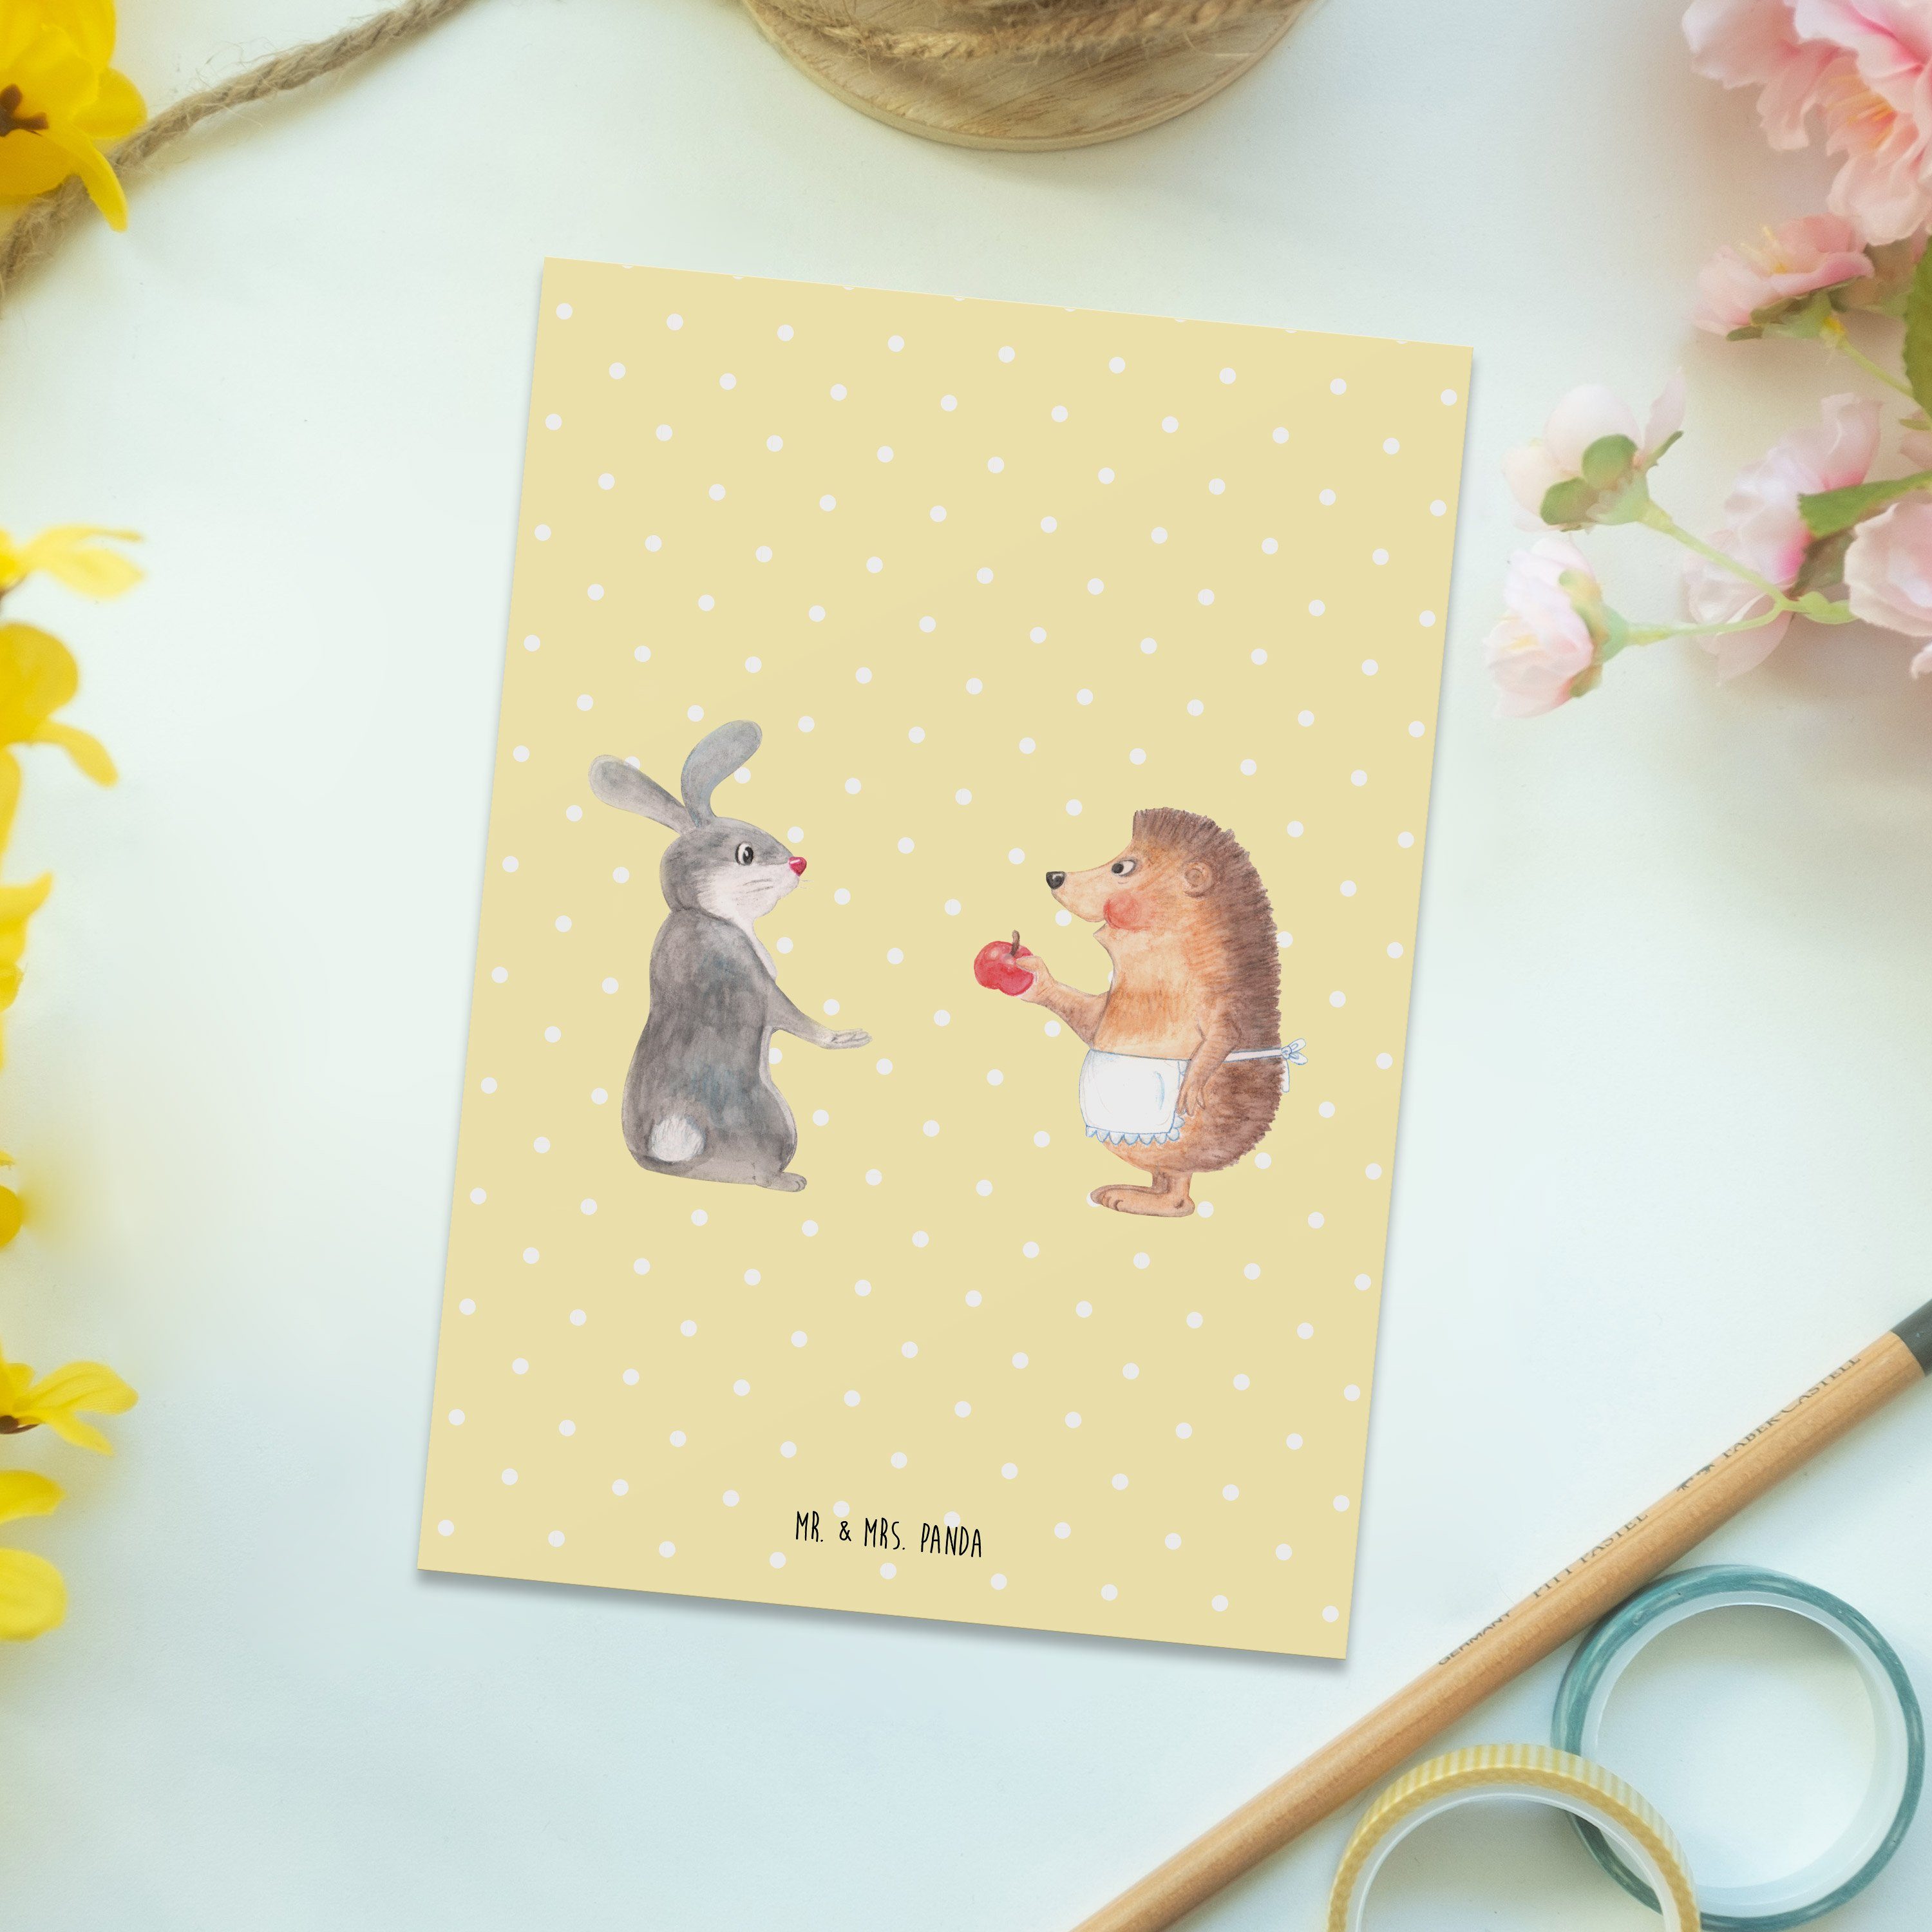 Postkarte ohne Liebe Gelb Pastell Liebeskummer ist - Mrs. Mr. & - Schmerz Panda Ge Geschenk, nie